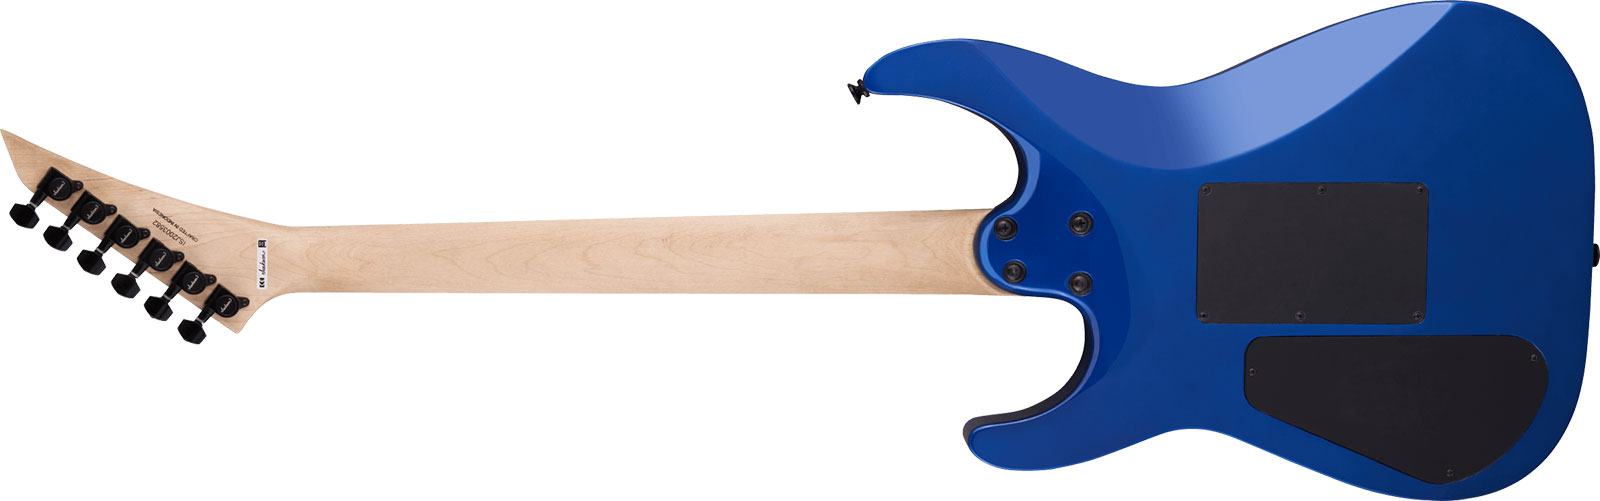 Jackson Dinky Dk3xr Hss Fr Lau - Cobalt Blue - E-Gitarre in Str-Form - Variation 1